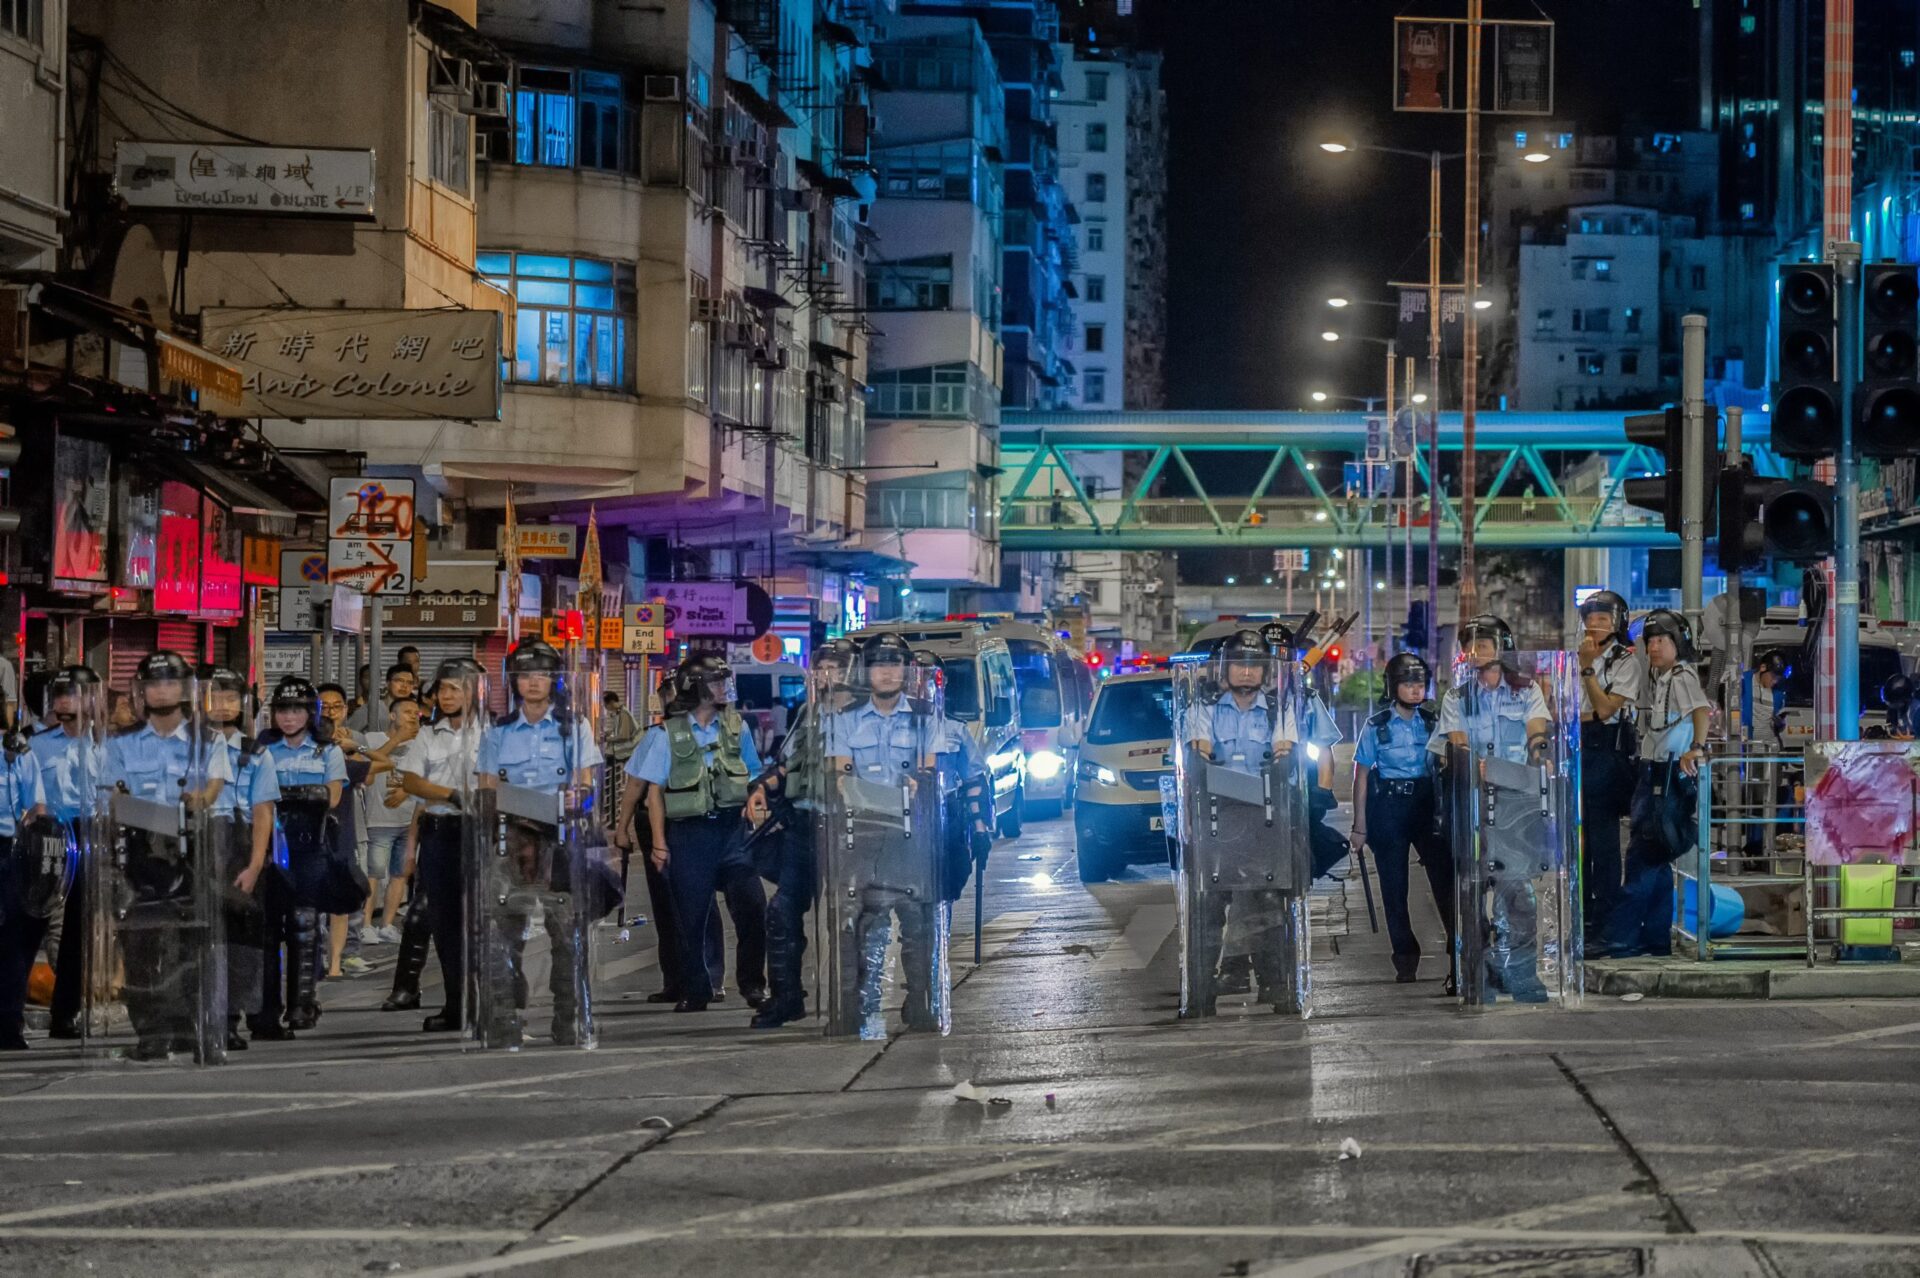 Autoridades prenderam 10 pessoas que apoiaram ativistas em Hong Kong